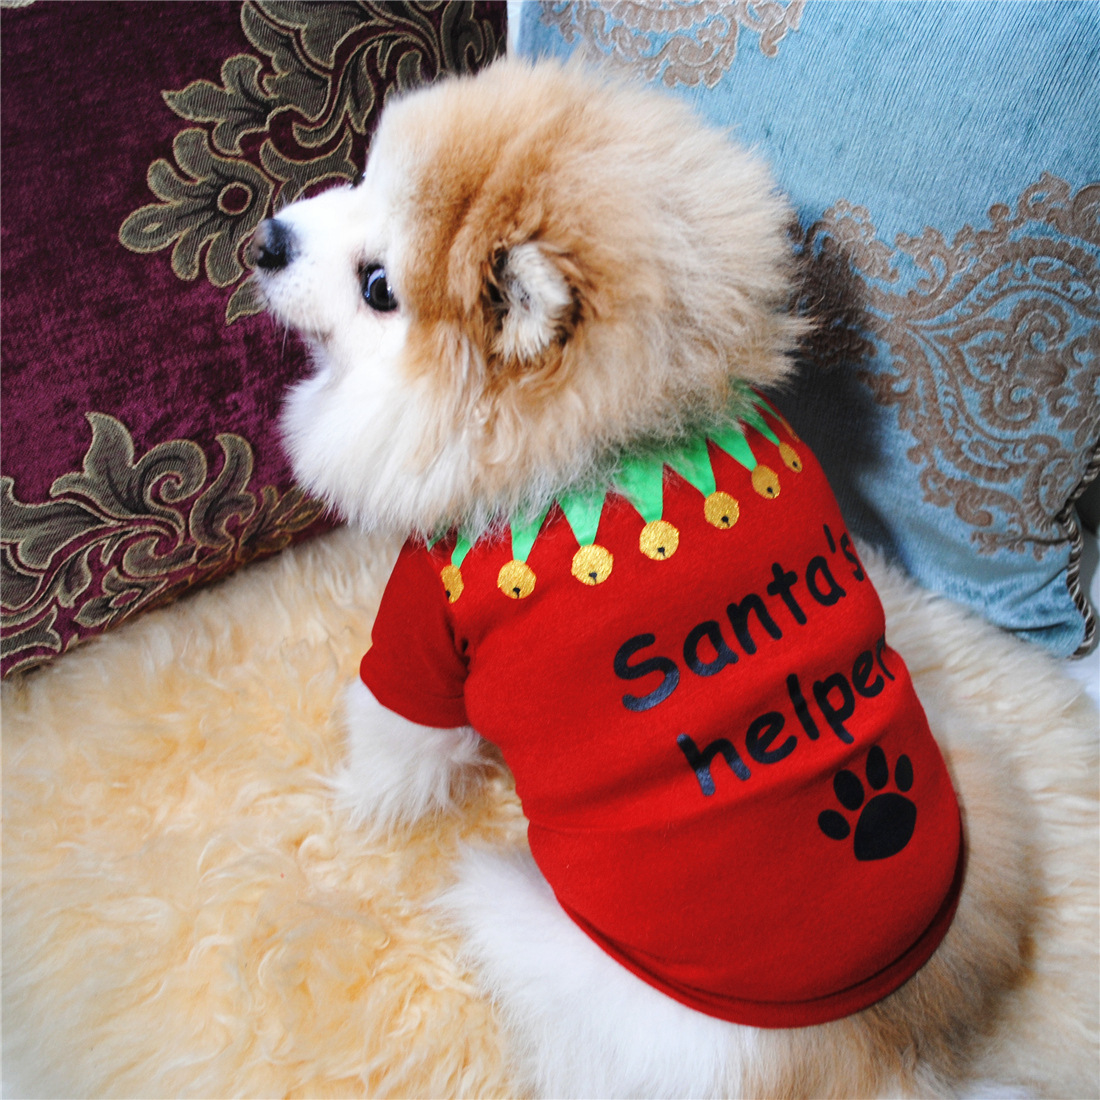 Red Bones Cat Puppy Pet Apparel Trang phục cho chó Giáng sinh Nhà thiết kế quần áo lấy cảm hứng từ chó